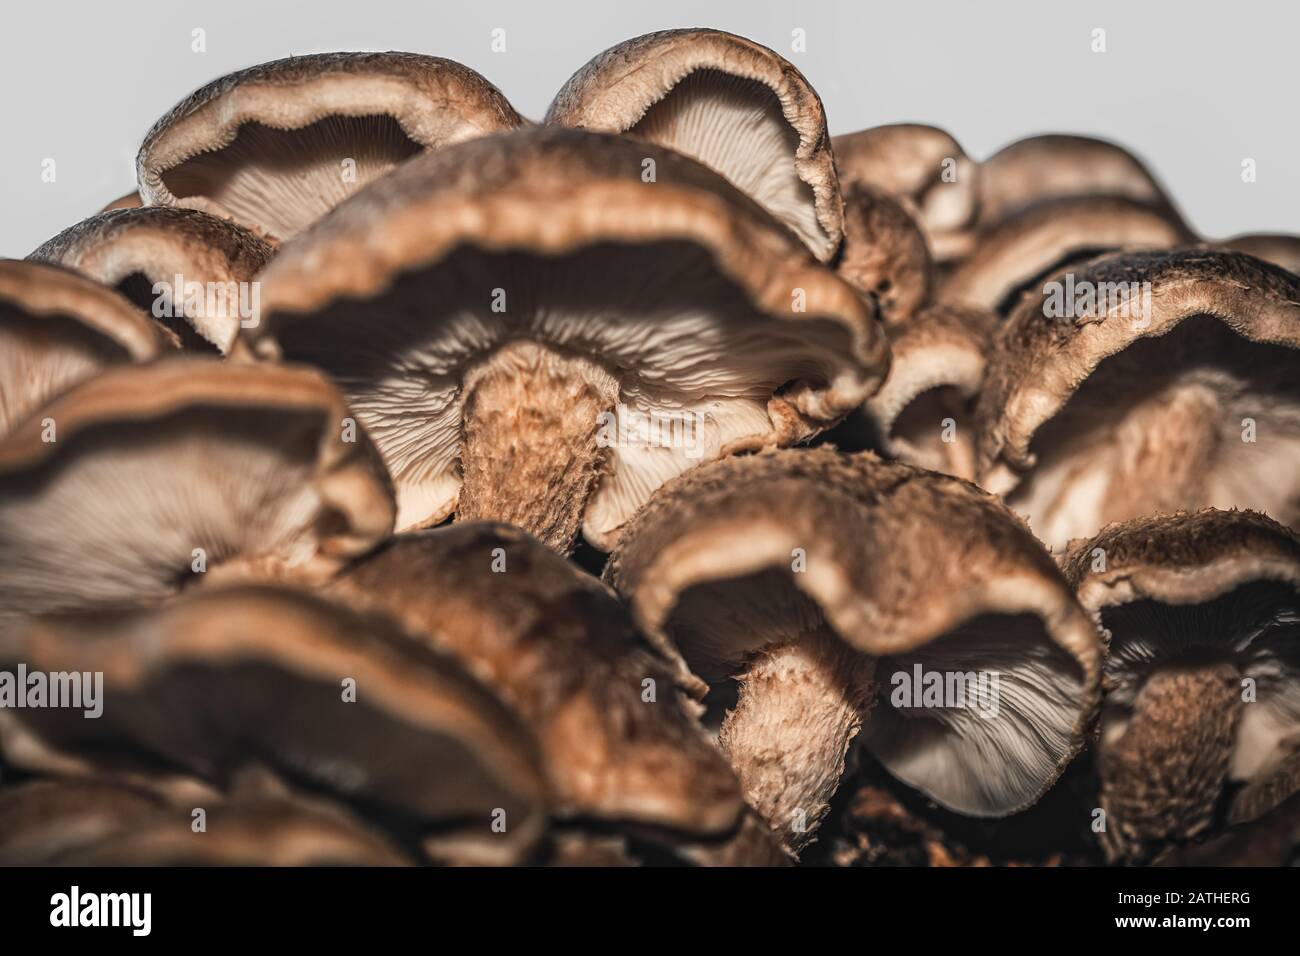 beaucoup de champignons shiitake frais et crus grandissent, détails du tir à faible angle Banque D'Images